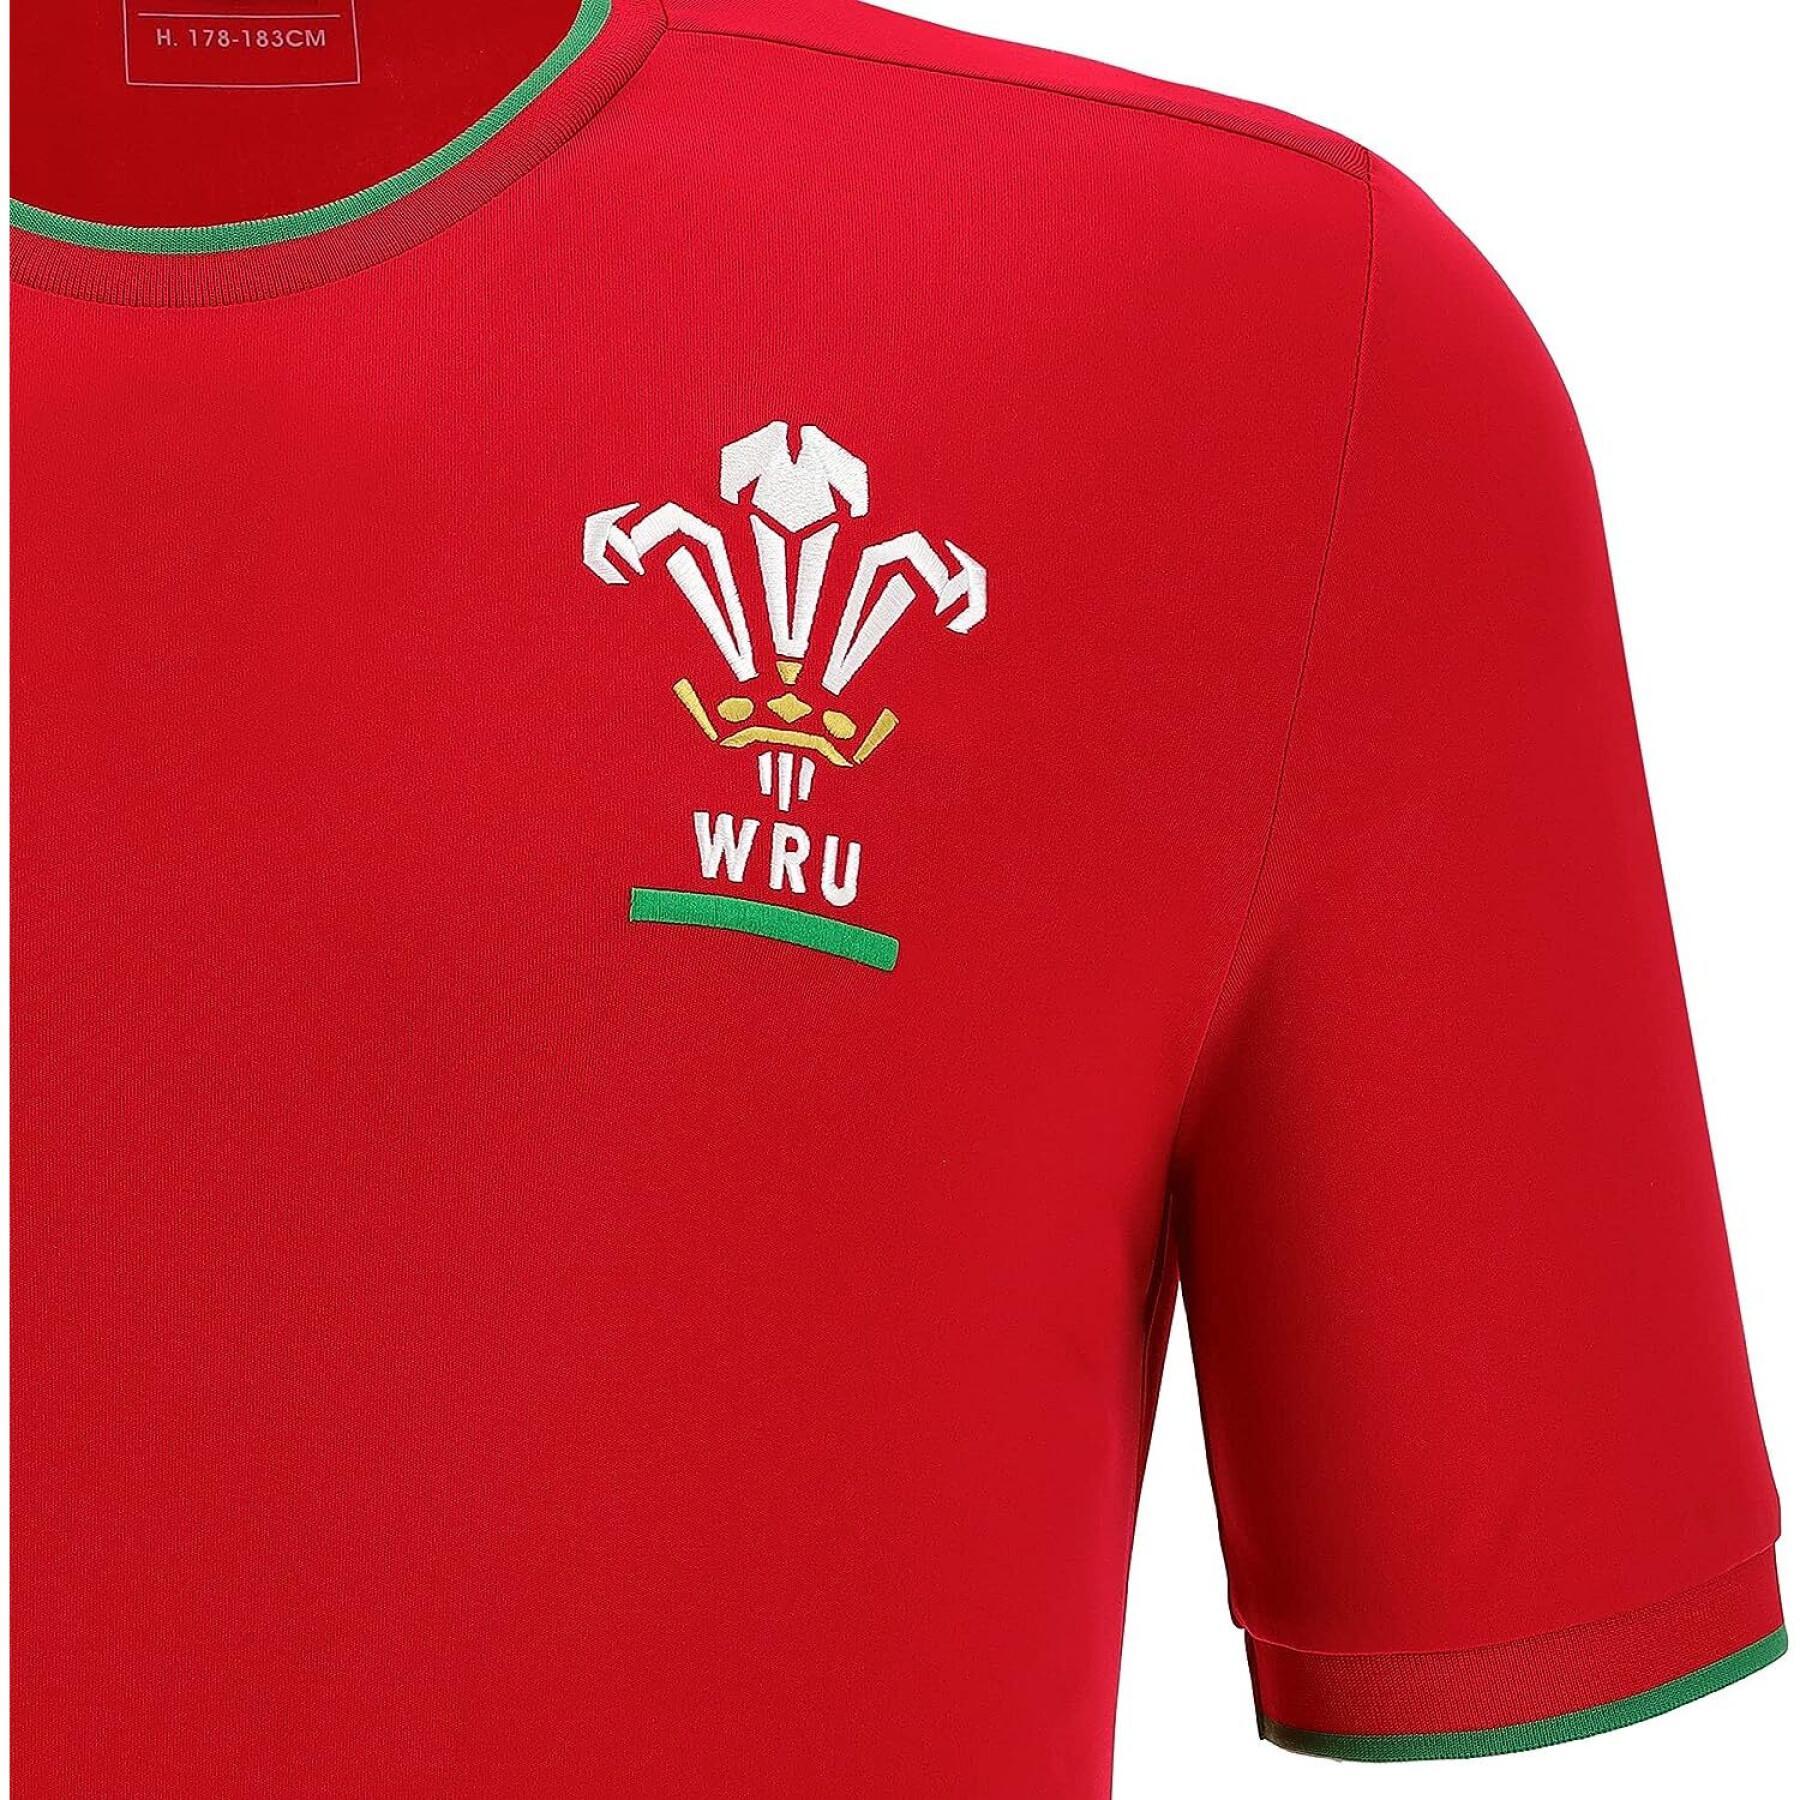 Camiseta Pays de Galles Ca Groc